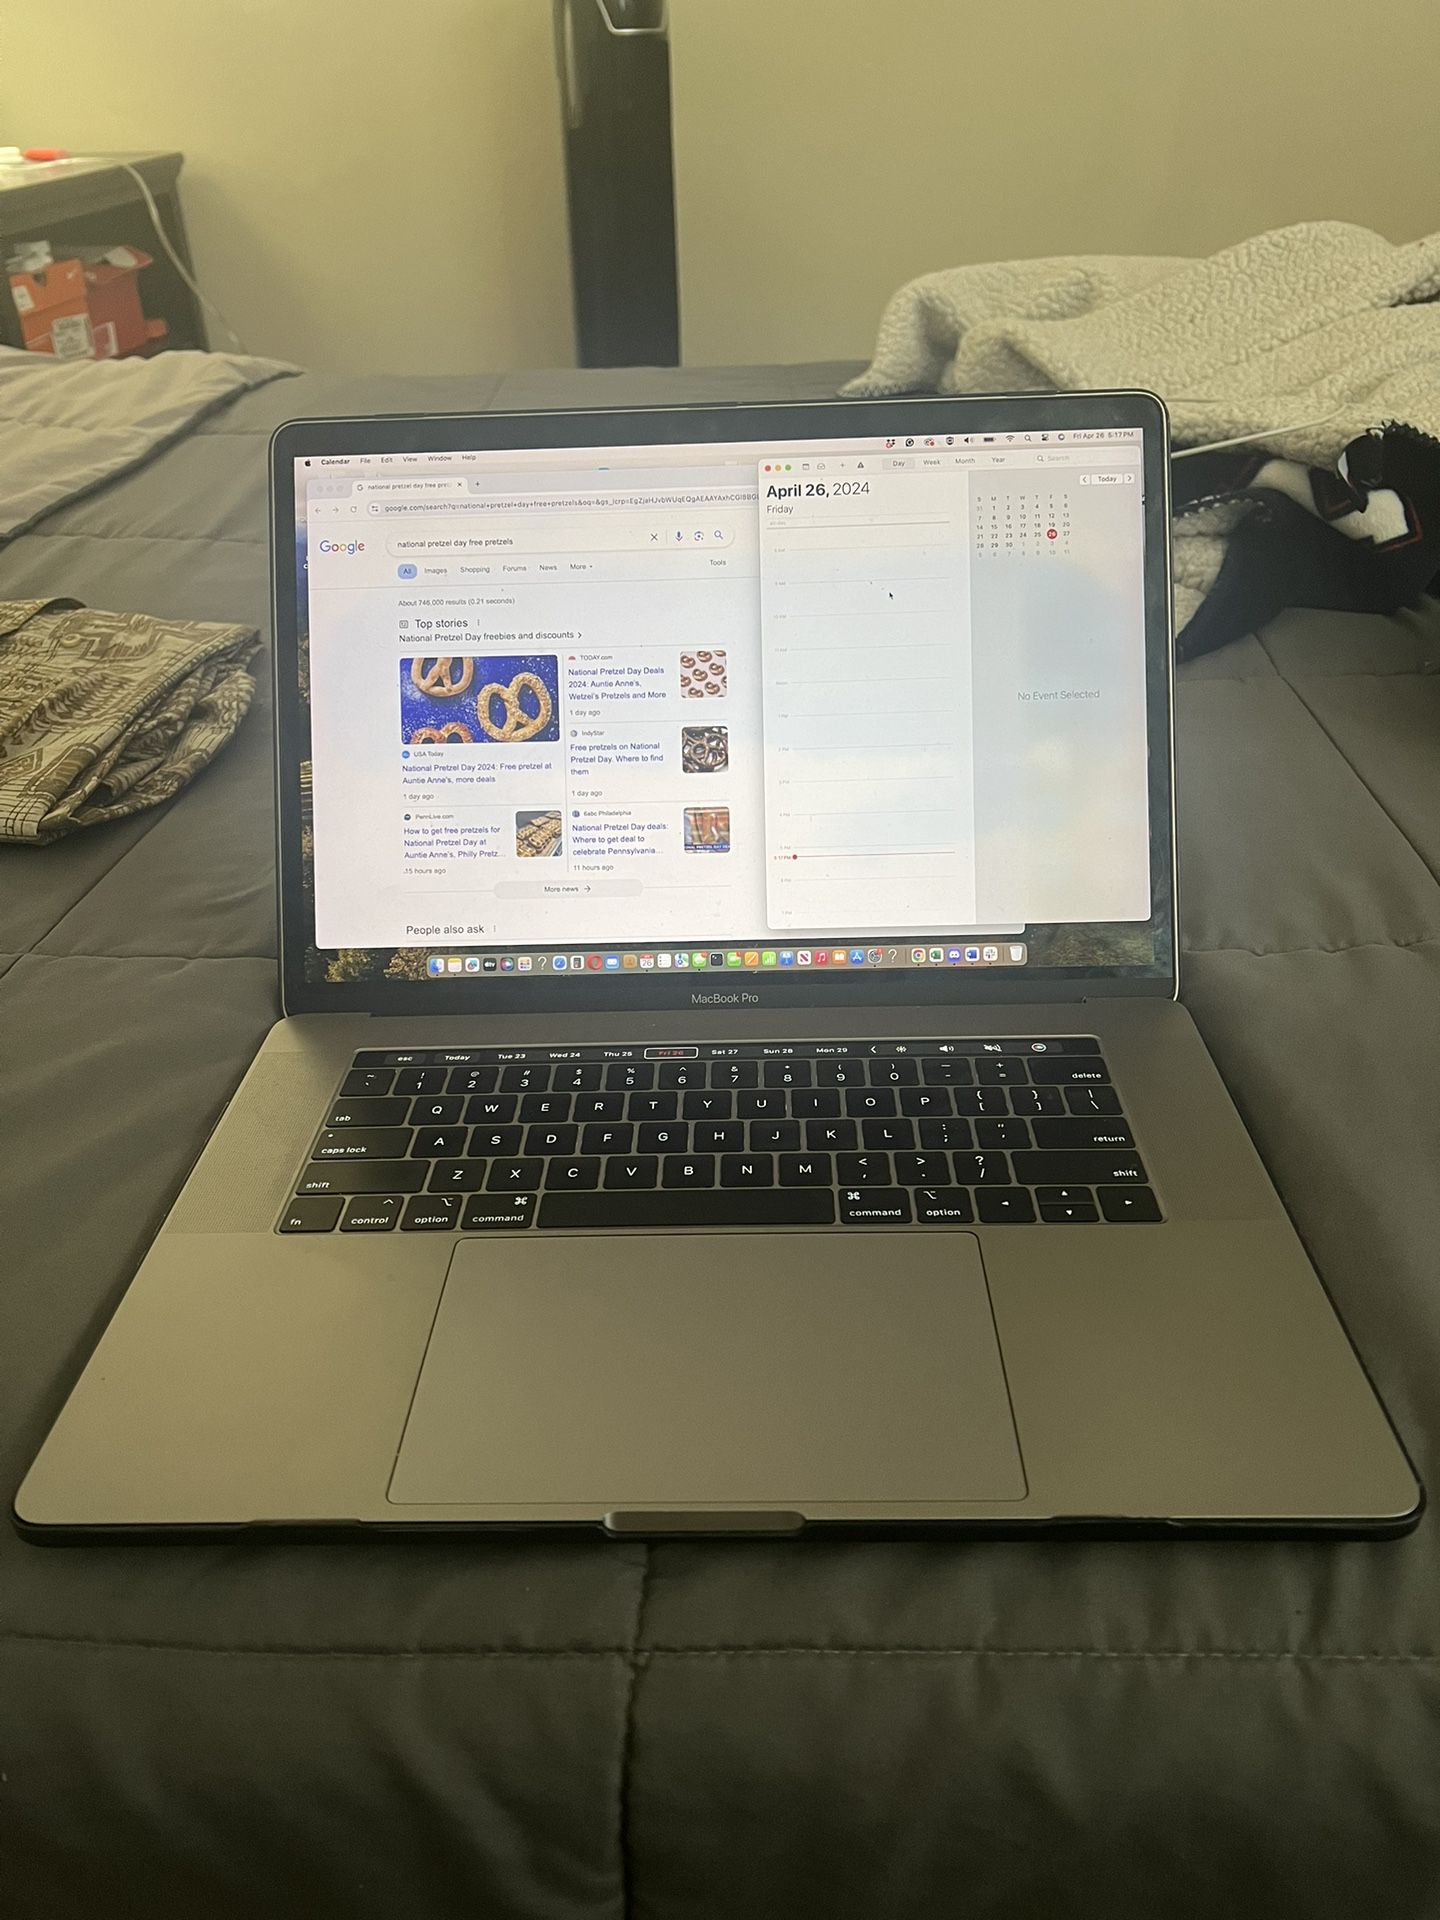 MacBook Pro 2018 15inch